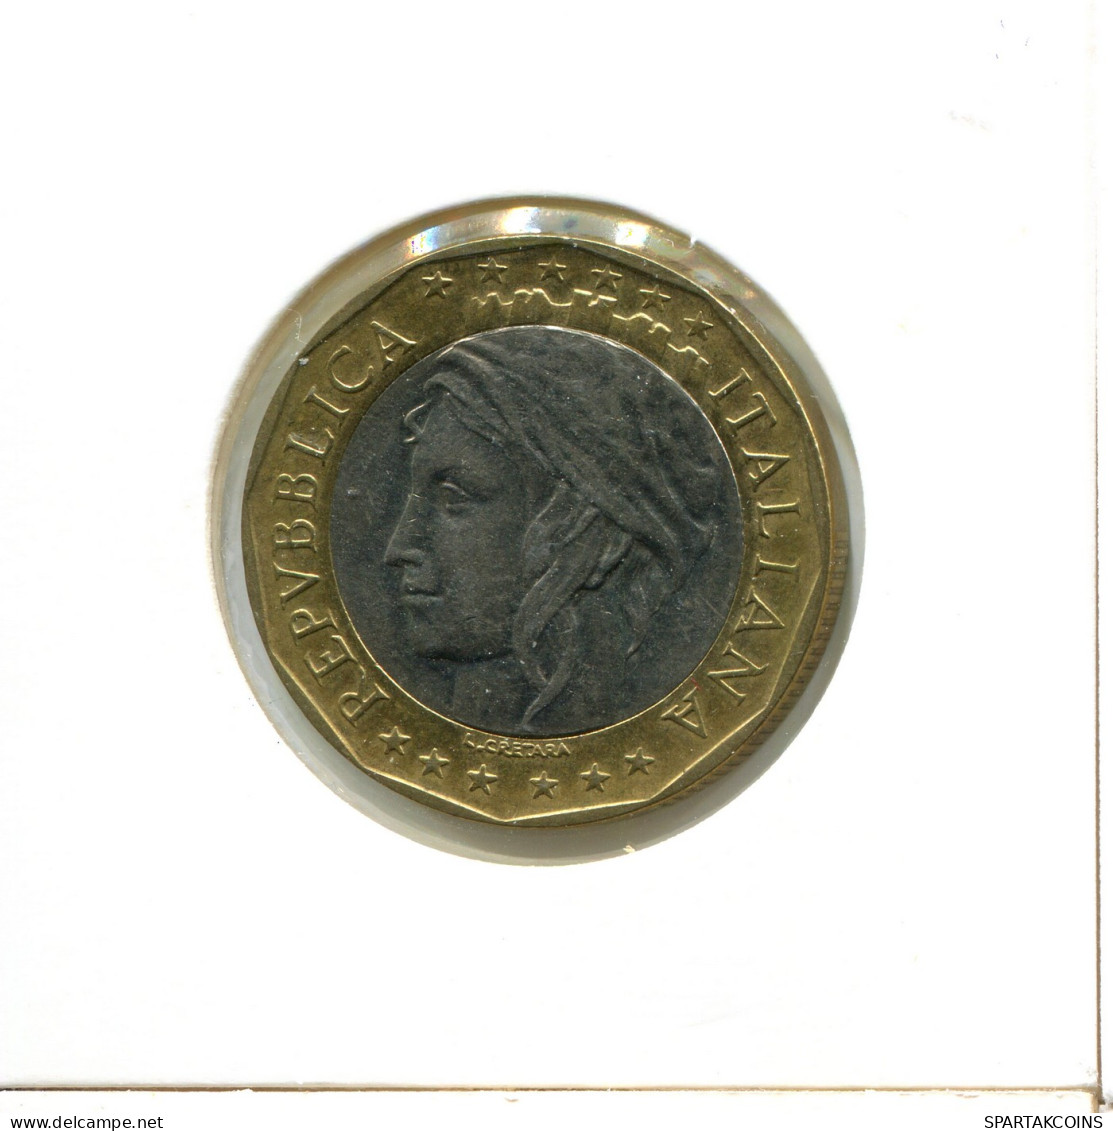 1000 LIRE 1998 ITALIA ITALY Moneda BIMETALLIC #AX861.E - 1 000 Lire